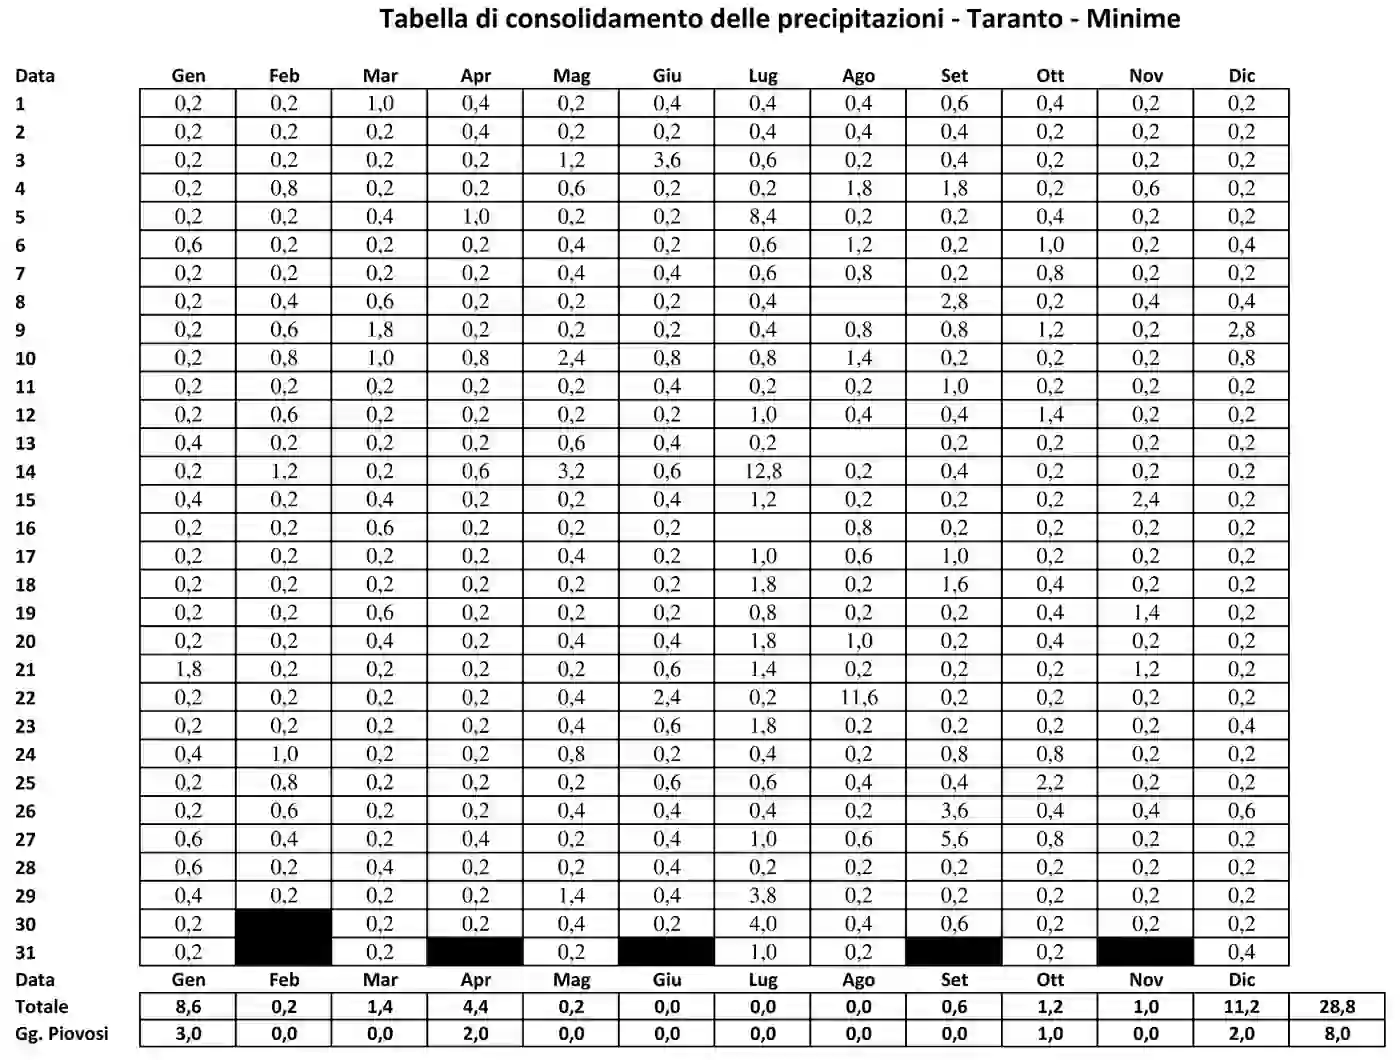 Tabella di consolidamento delle precipitazioni minime di Taranto